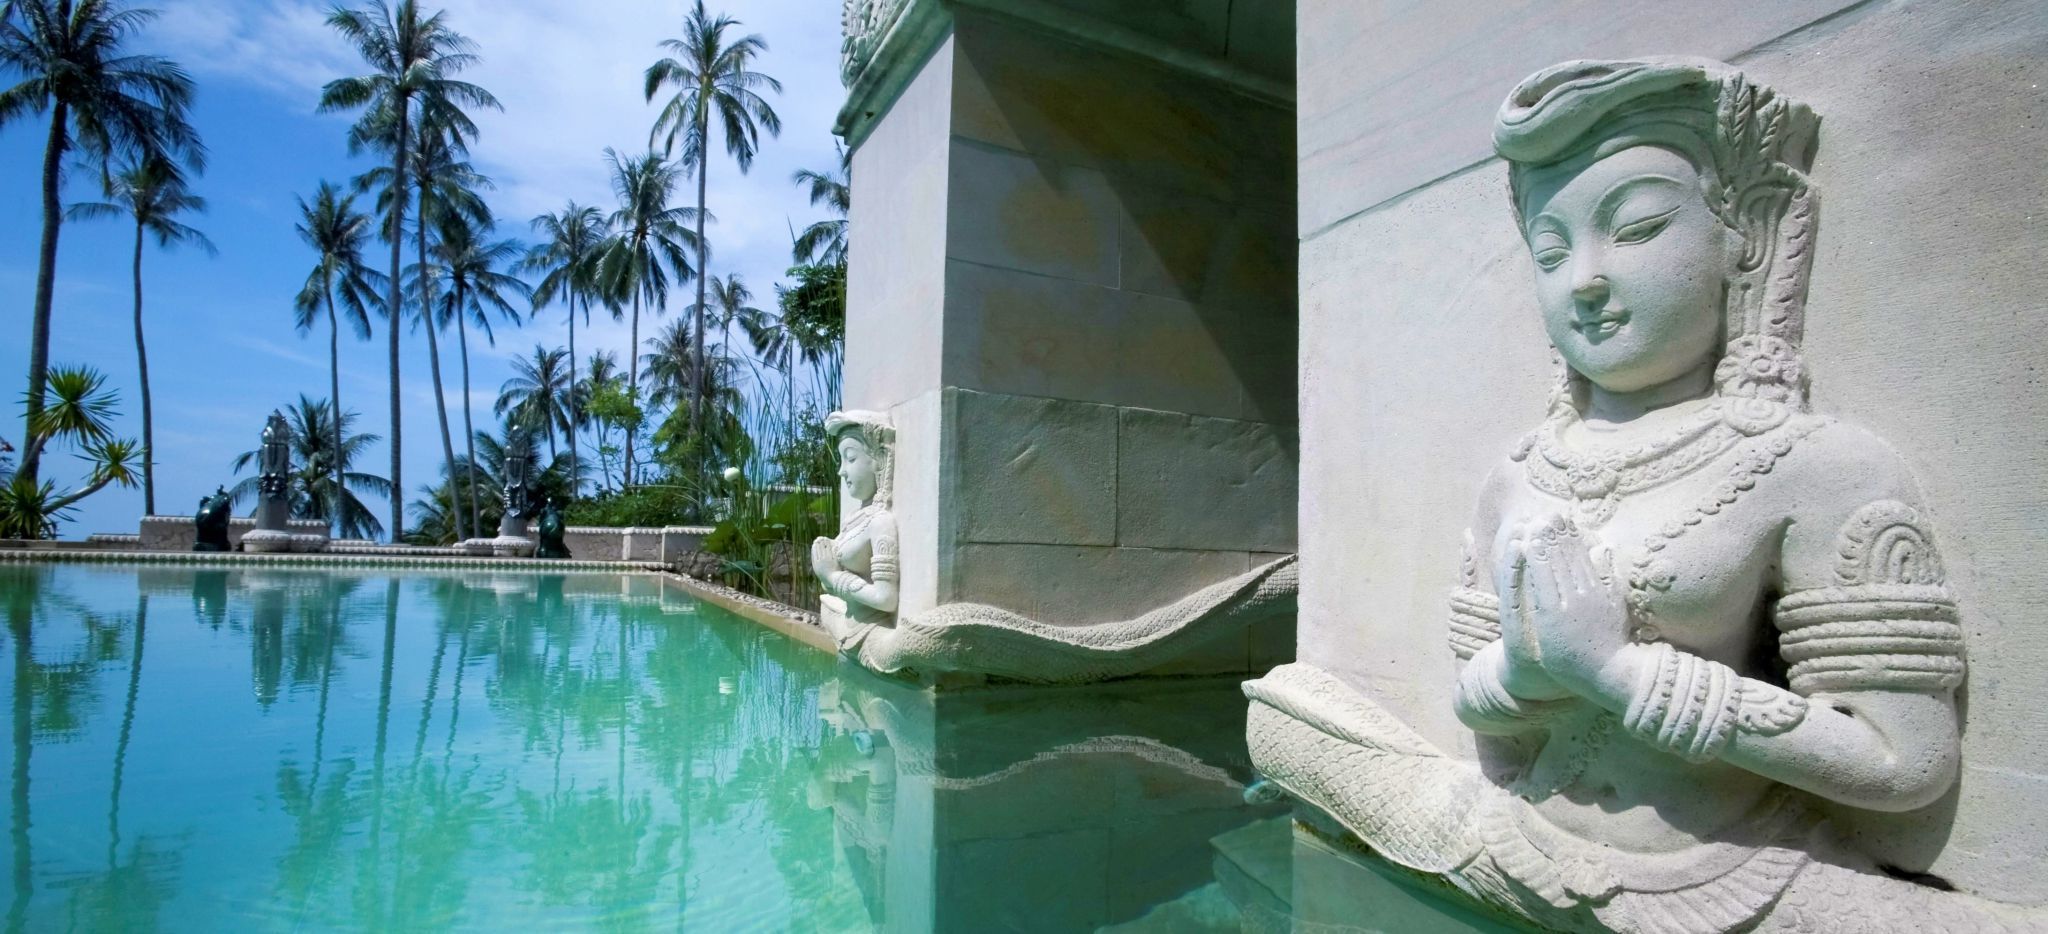 Buddhistische Statue in den Stein um einen Pool geschlagen, im Hintergrund Palmen. Das Hotel Kamalya auf Koh Samui in Thailand